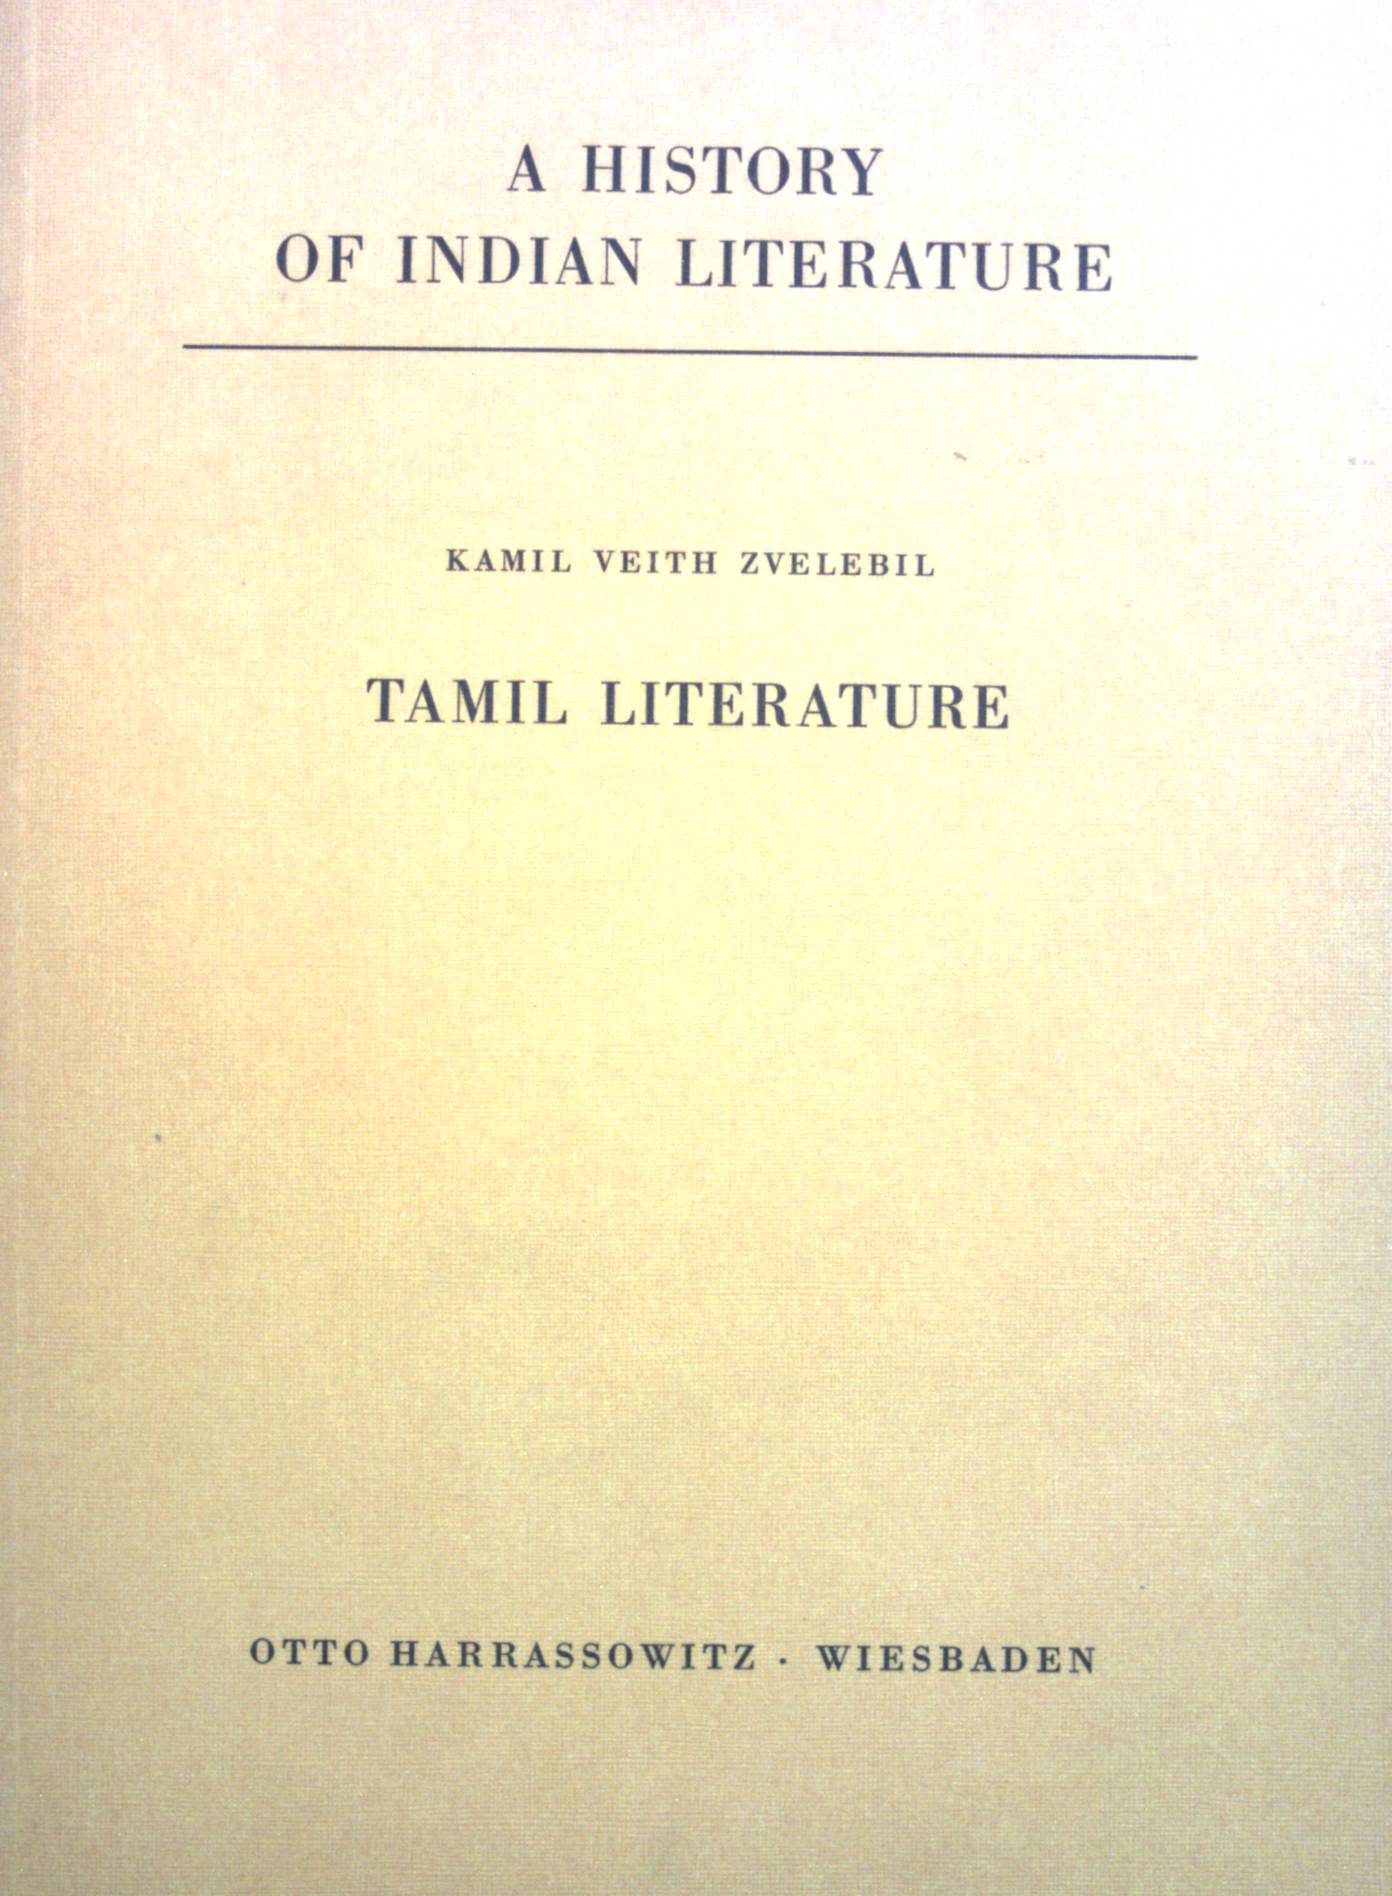 Tamil literature. A history of Indian literature; Vol. X, Fasc. 1 - Zvelebil, Kamil